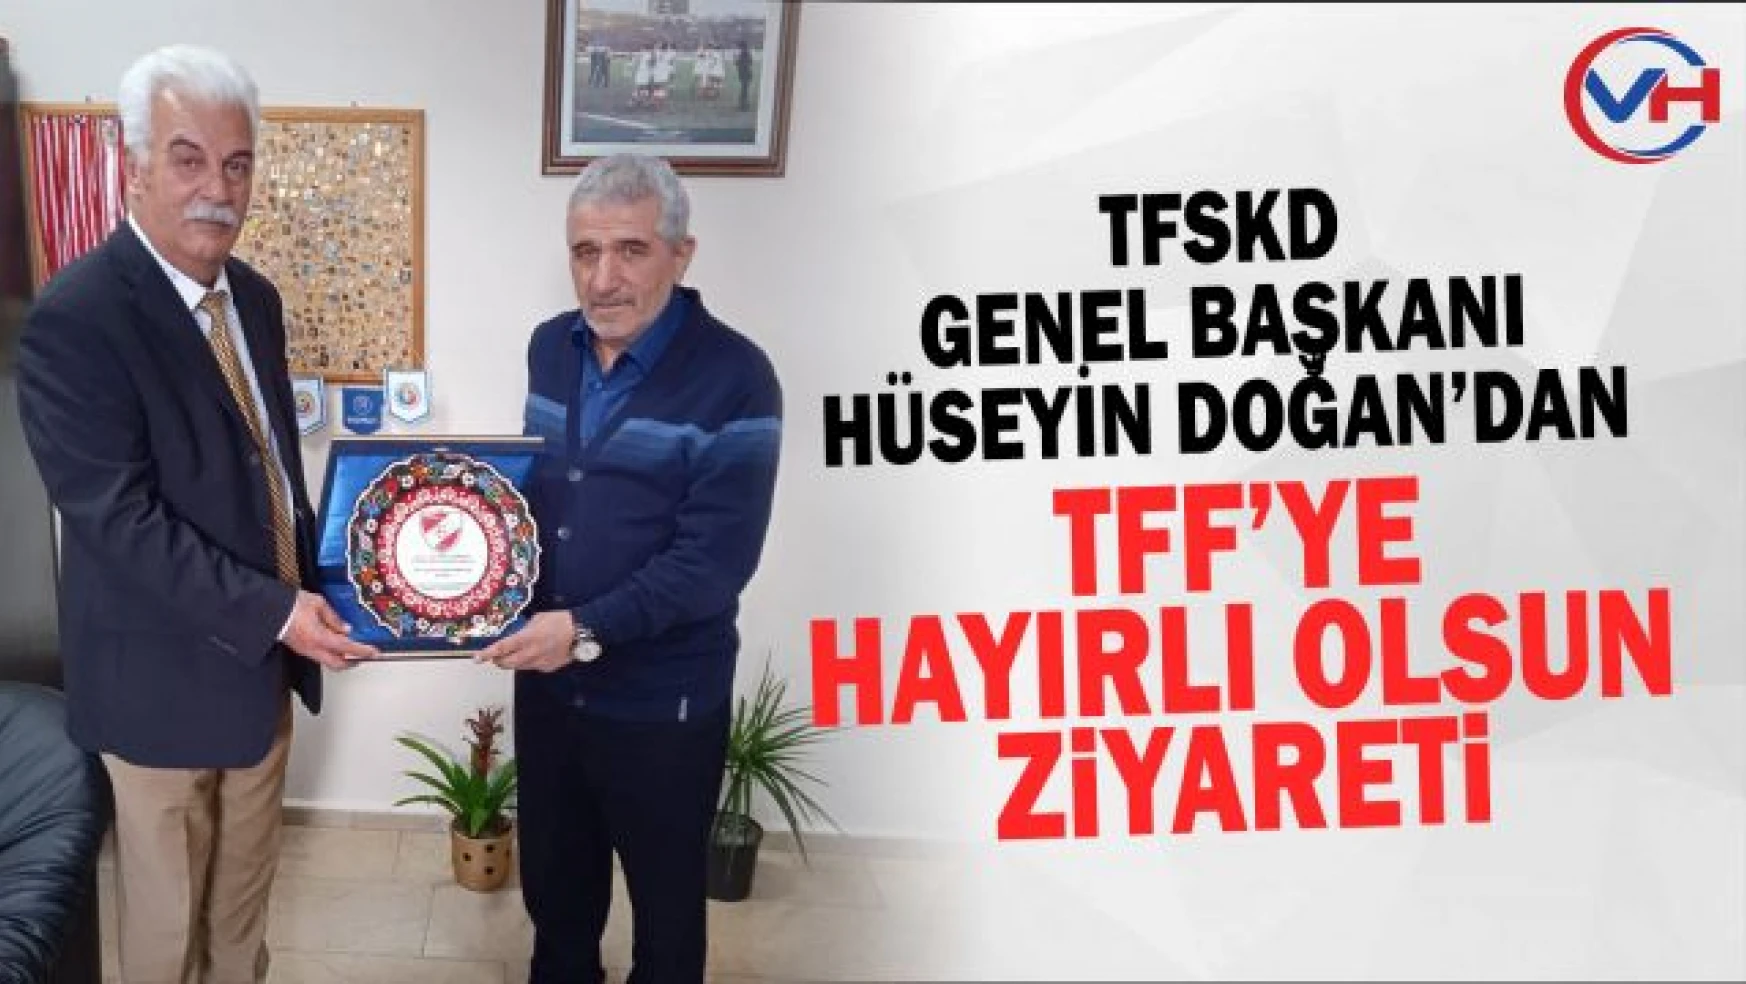 TFSKD Genel Başkanı Doğan'dan Fahrettin Eserdi'ye anlamlı ziyaret